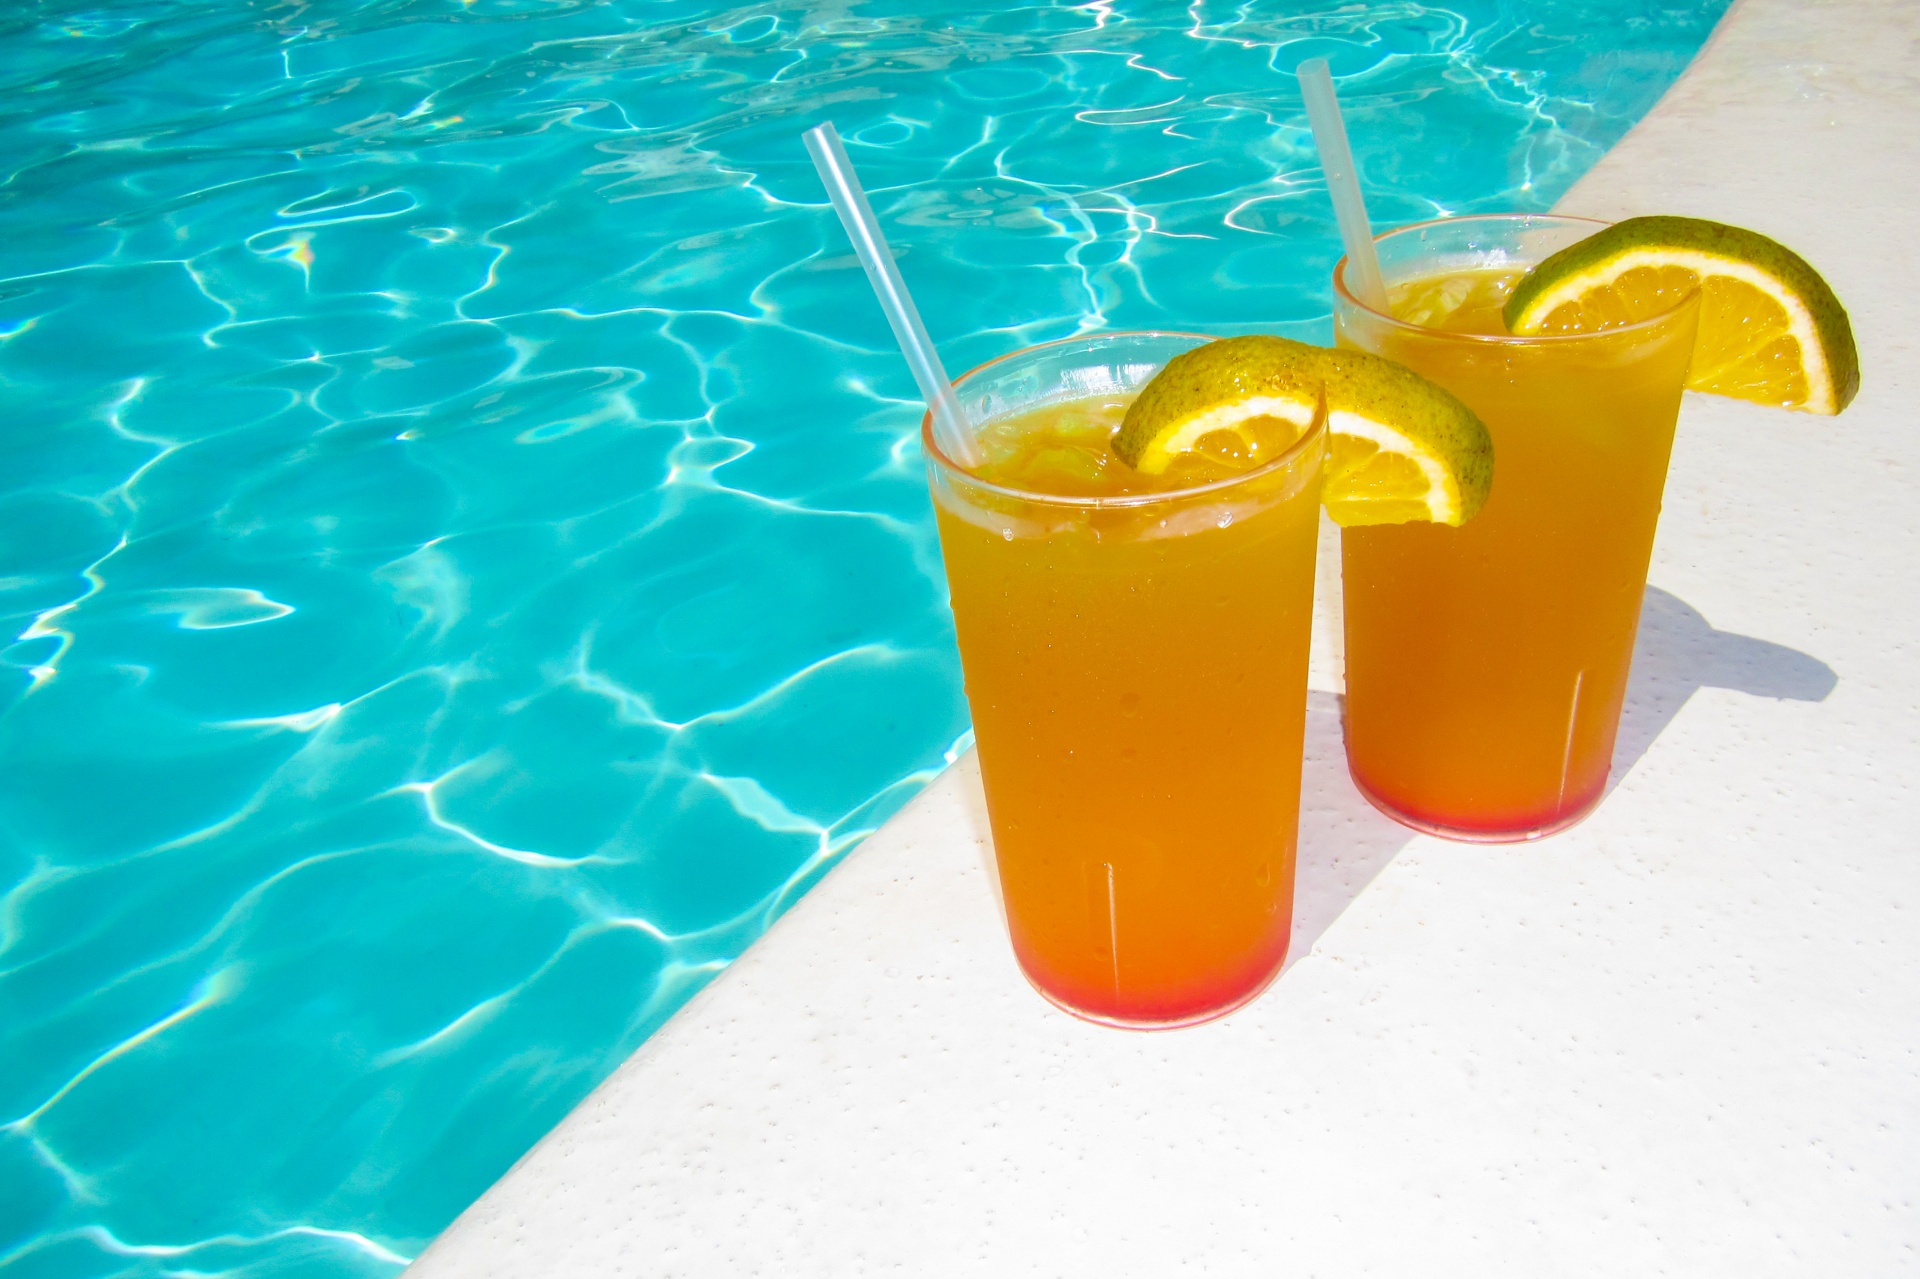 Suco de laranja na piscina